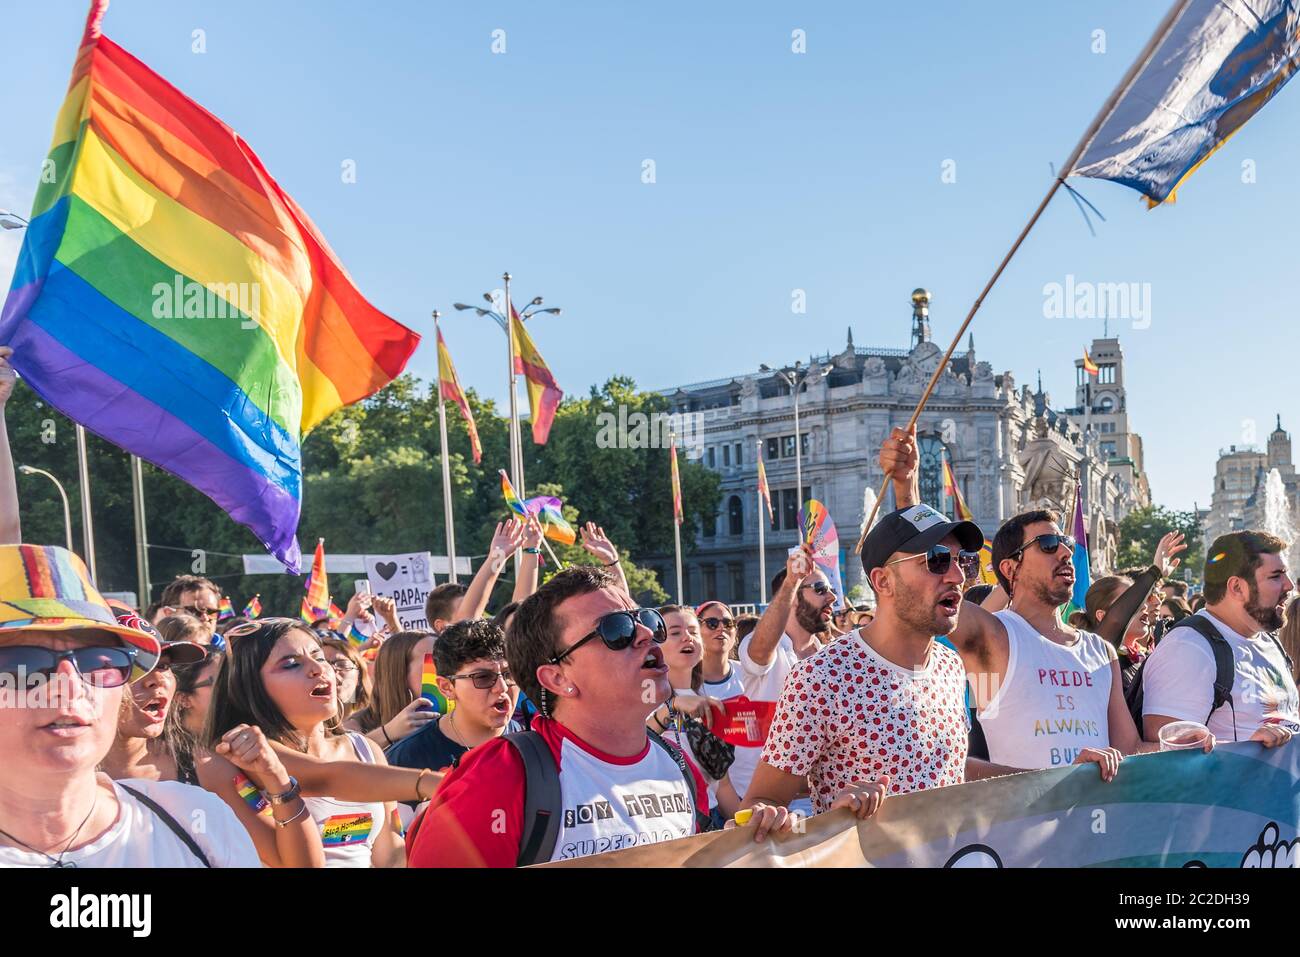 Madrid, Espagne - 06 juillet 2019 : à Madrid, fête de la fierté gay. Groupe de personnes debout devant une foule Banque D'Images